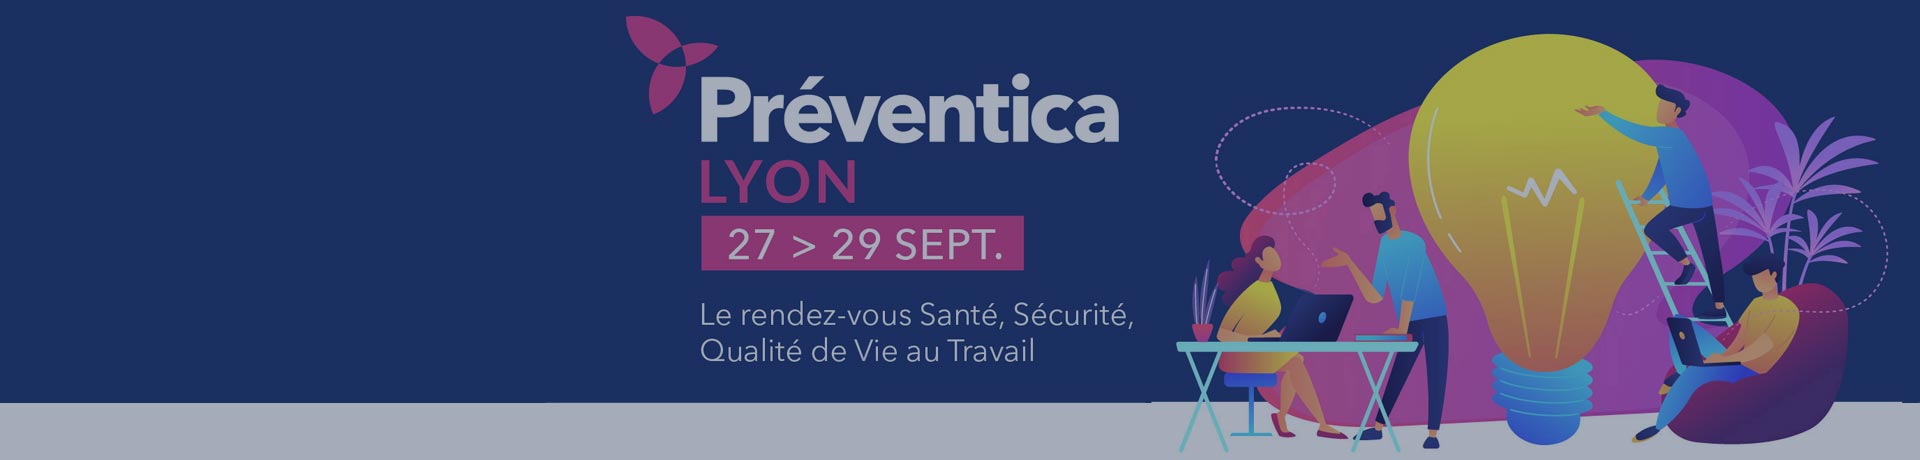 Preventica Lyon